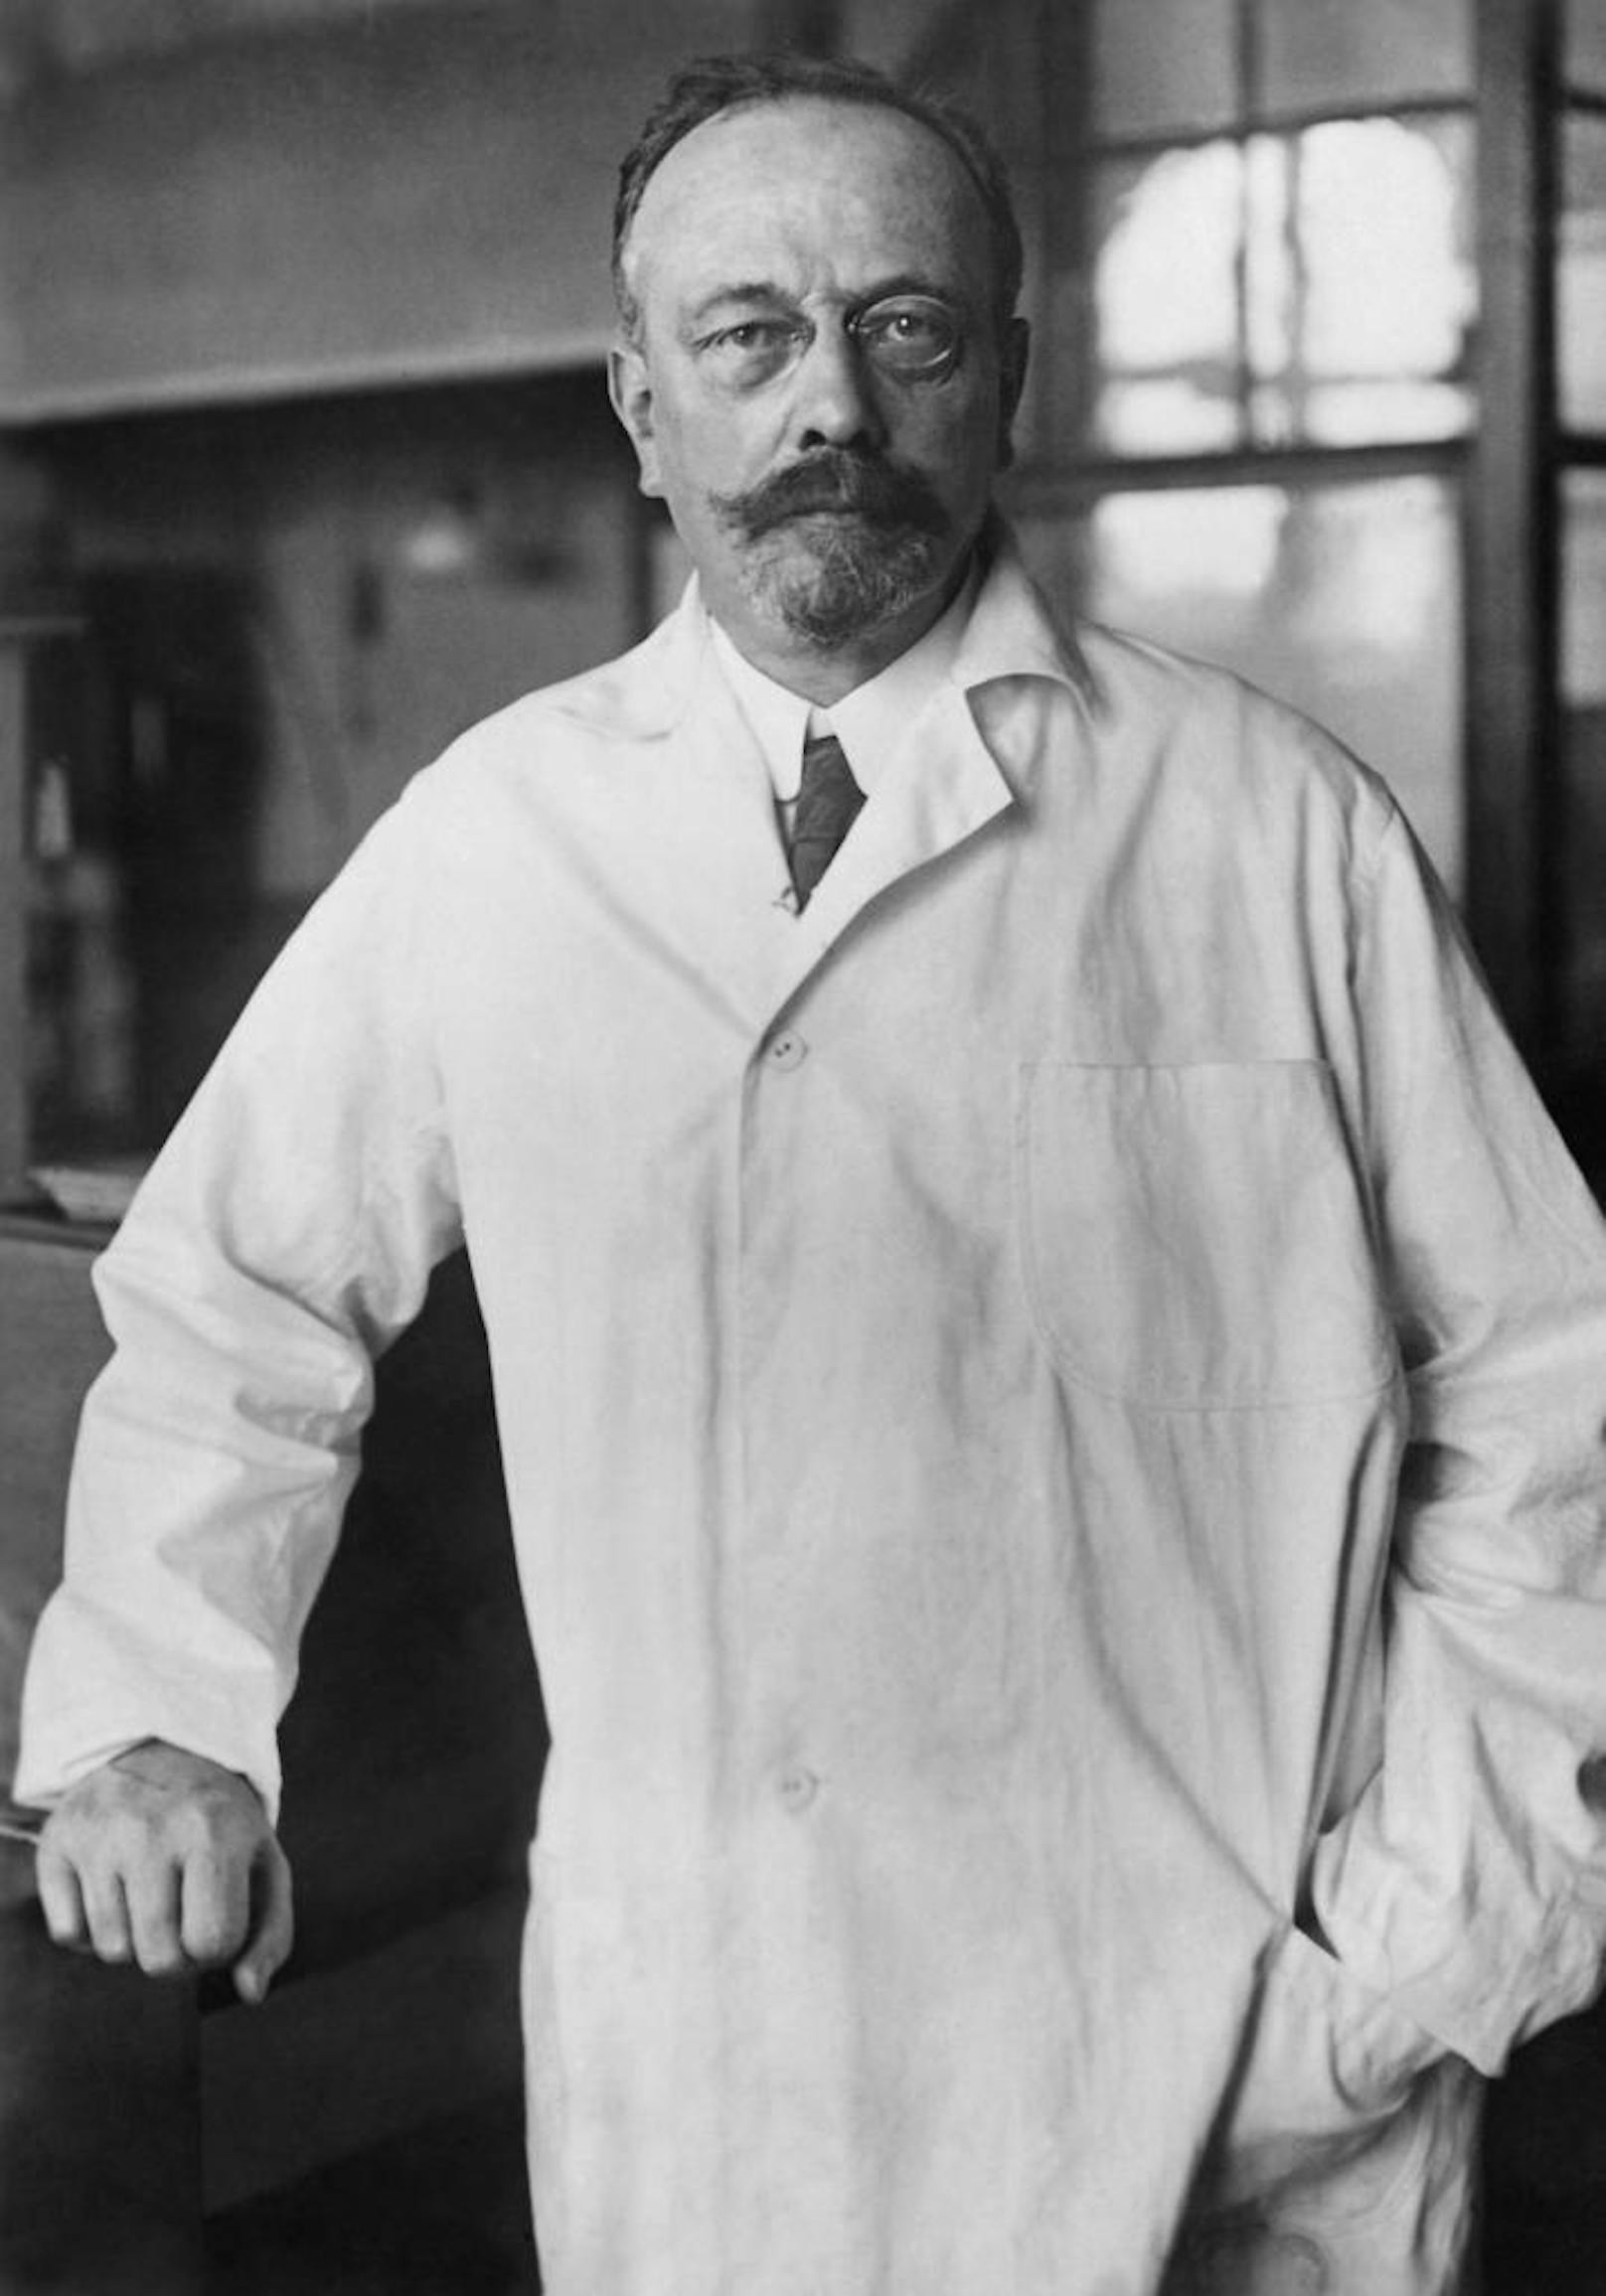 Johannes Fibiger lieferte bemerkenswerte Arbeiten für die Medizin. Dennoch leistete er sich hin und wieder auch Fehler, wie jeder Wissenschaftler.